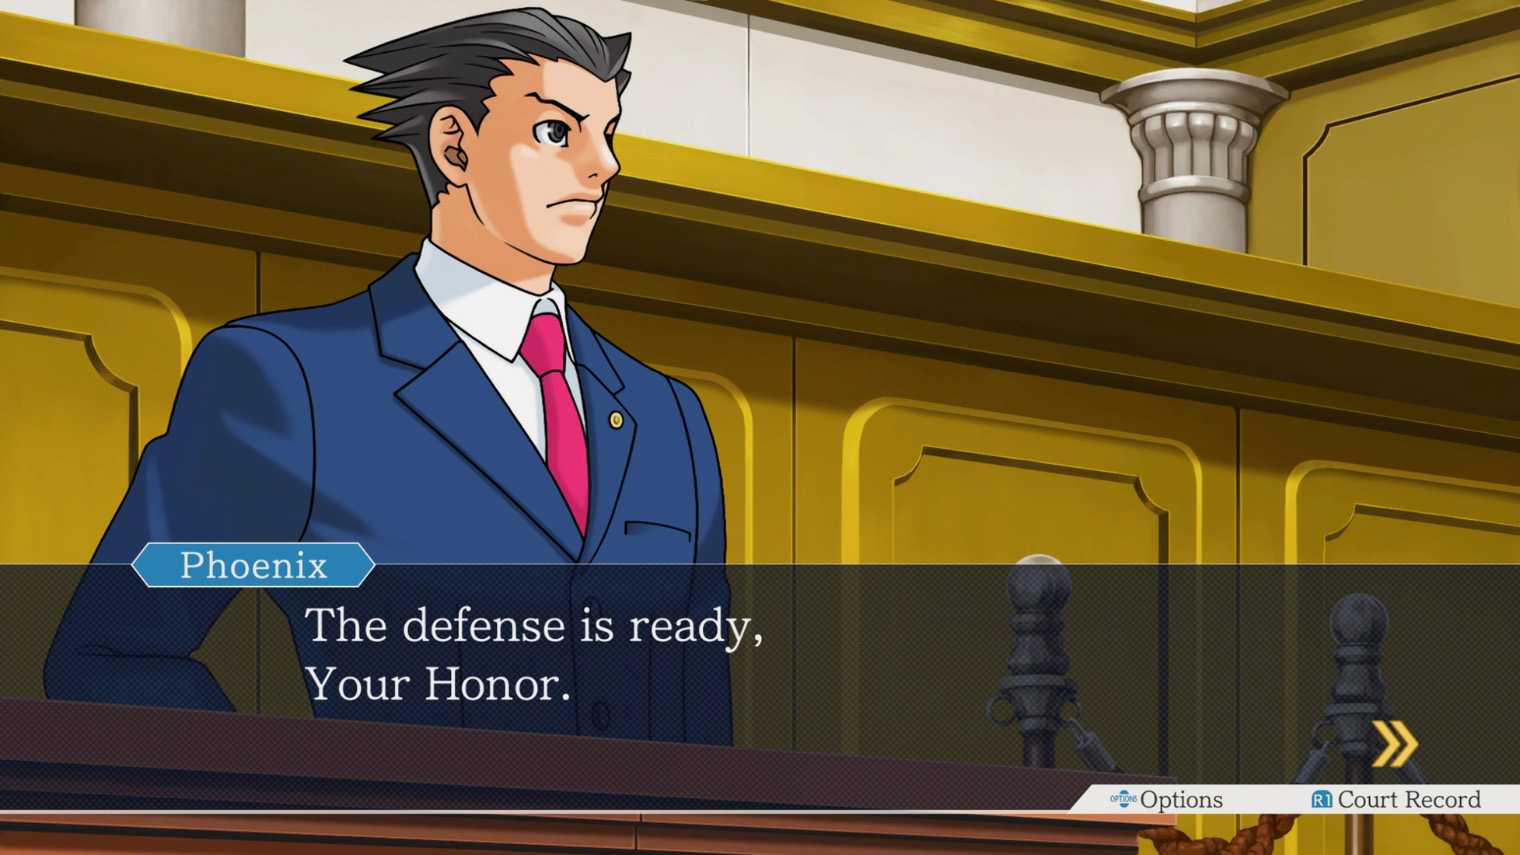 Многие моменты из Ace Attorney давно стали мемами. Например, коронная фраза главного героя Феникса Райта «Objection!». Кадр: Capcom